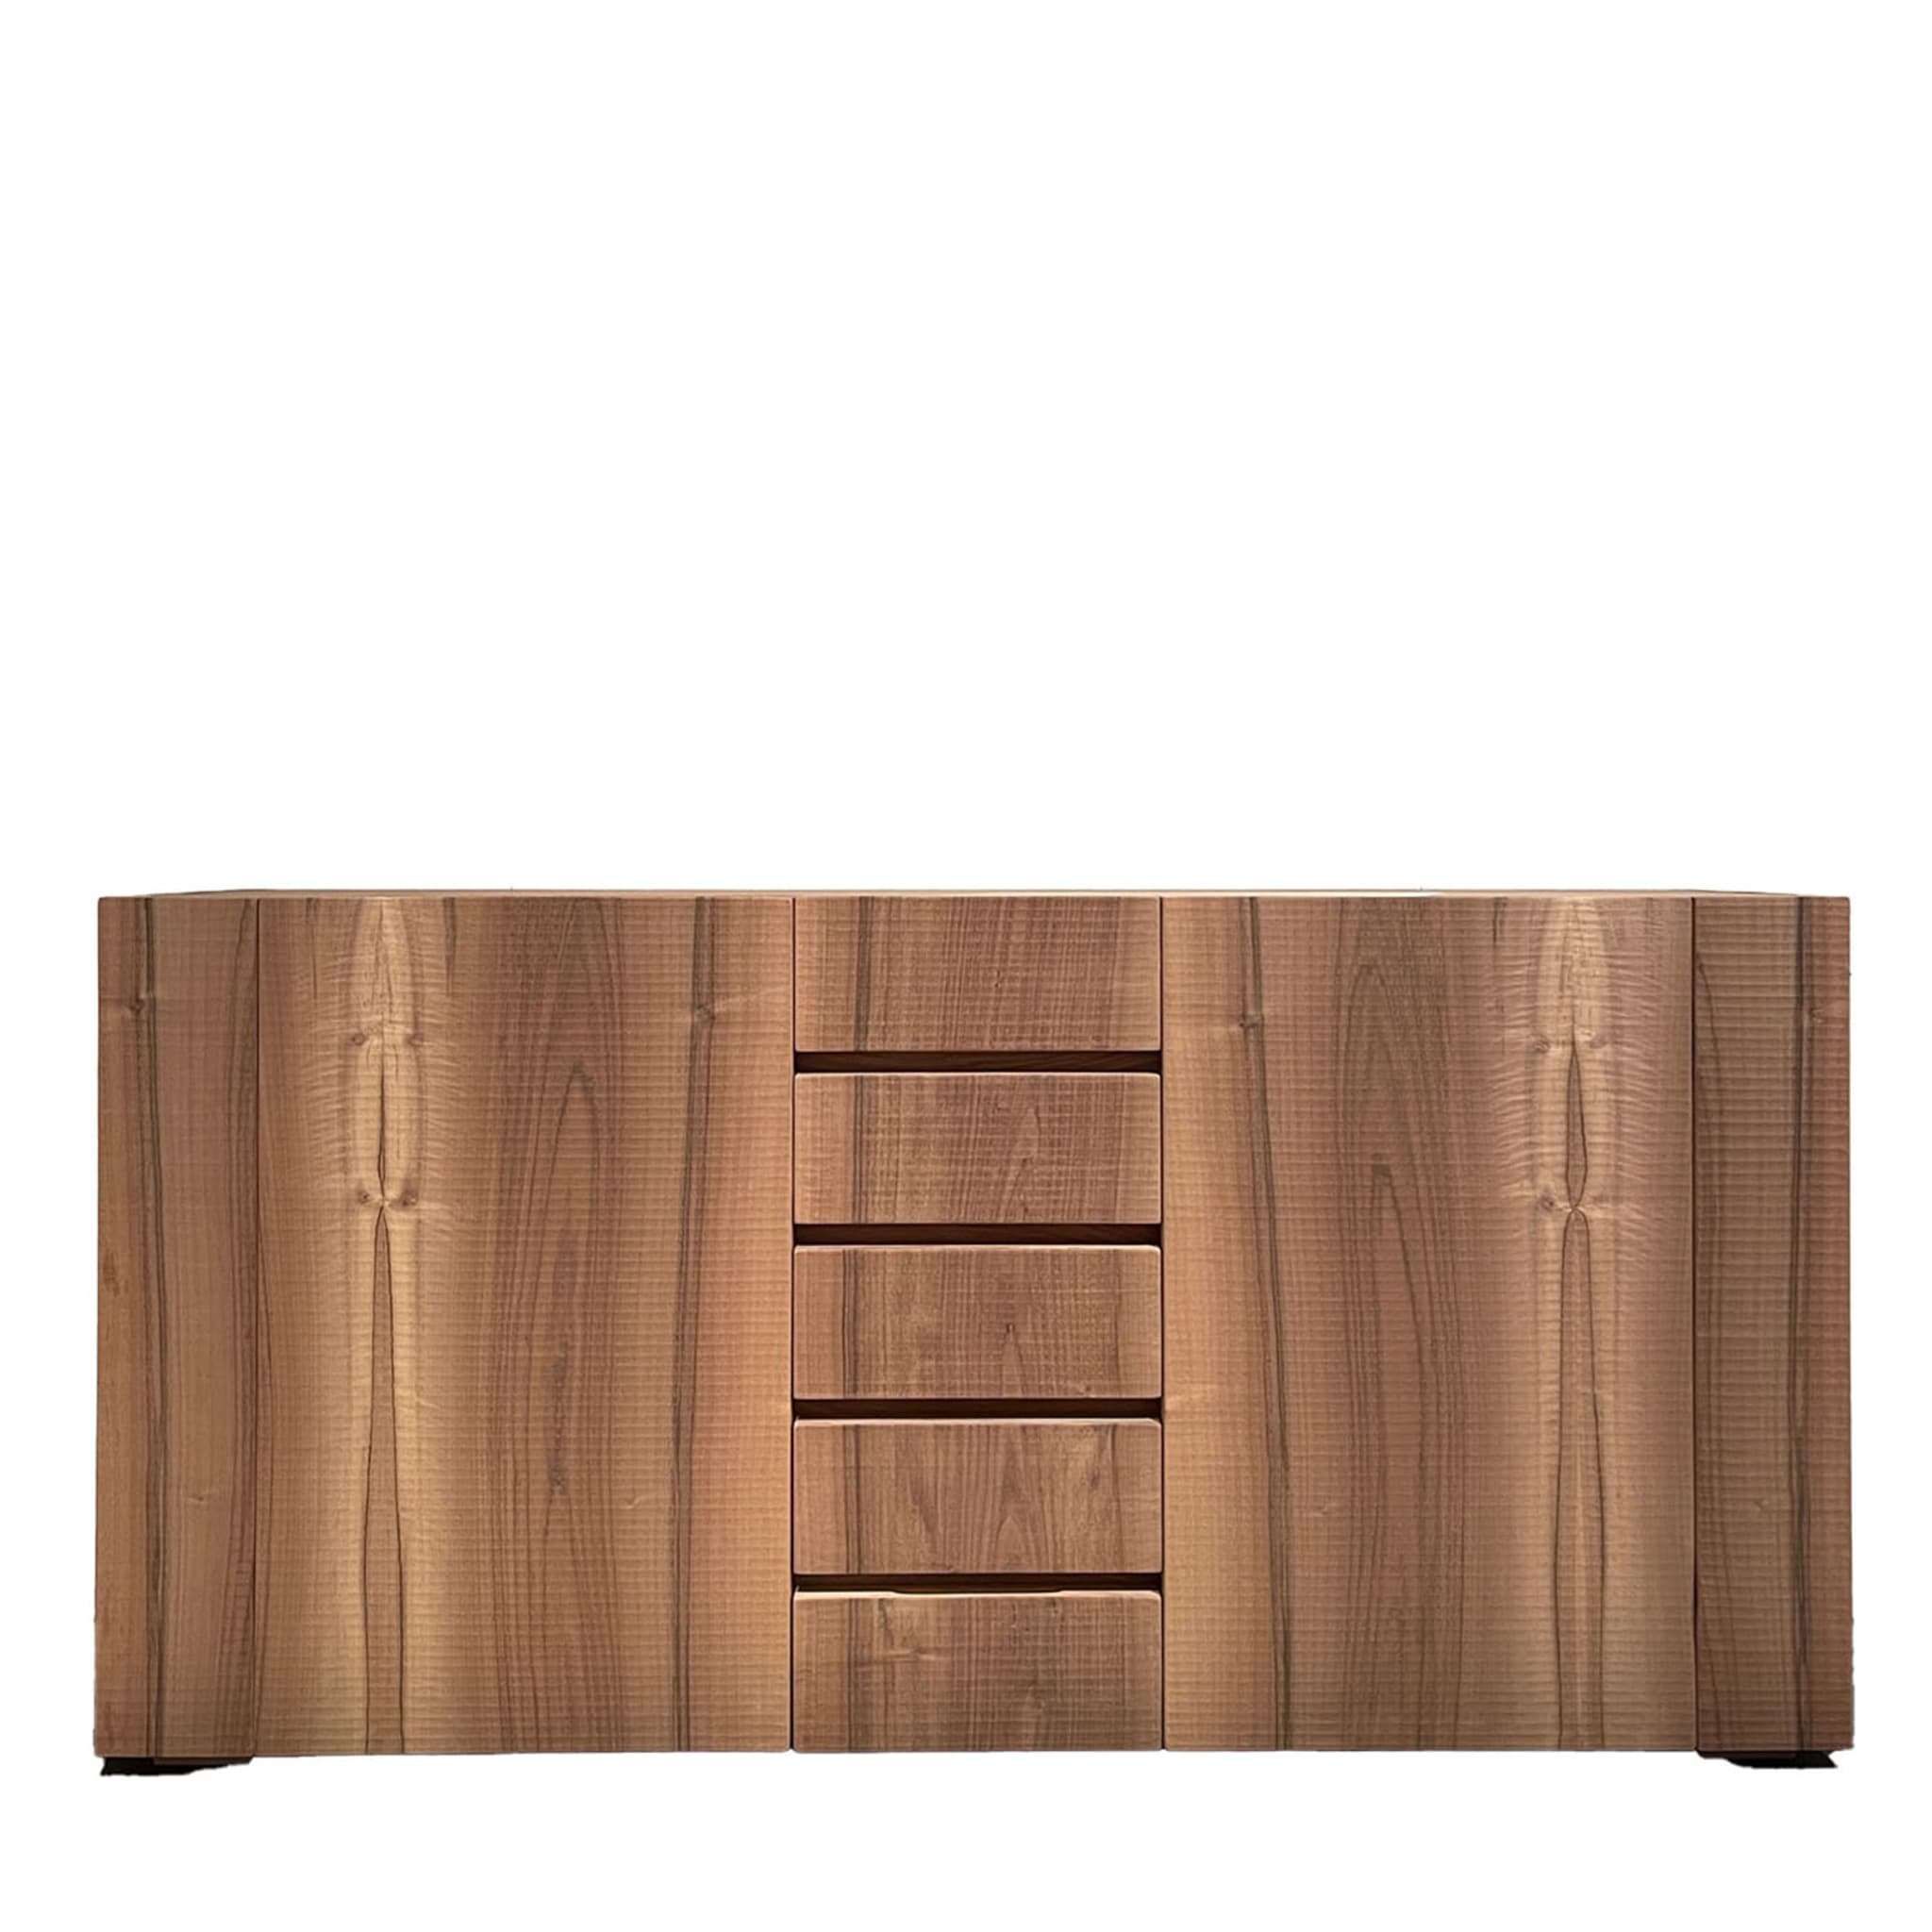 Bonaventura 2-Door Walnut Sideboard with Drawers - Main view